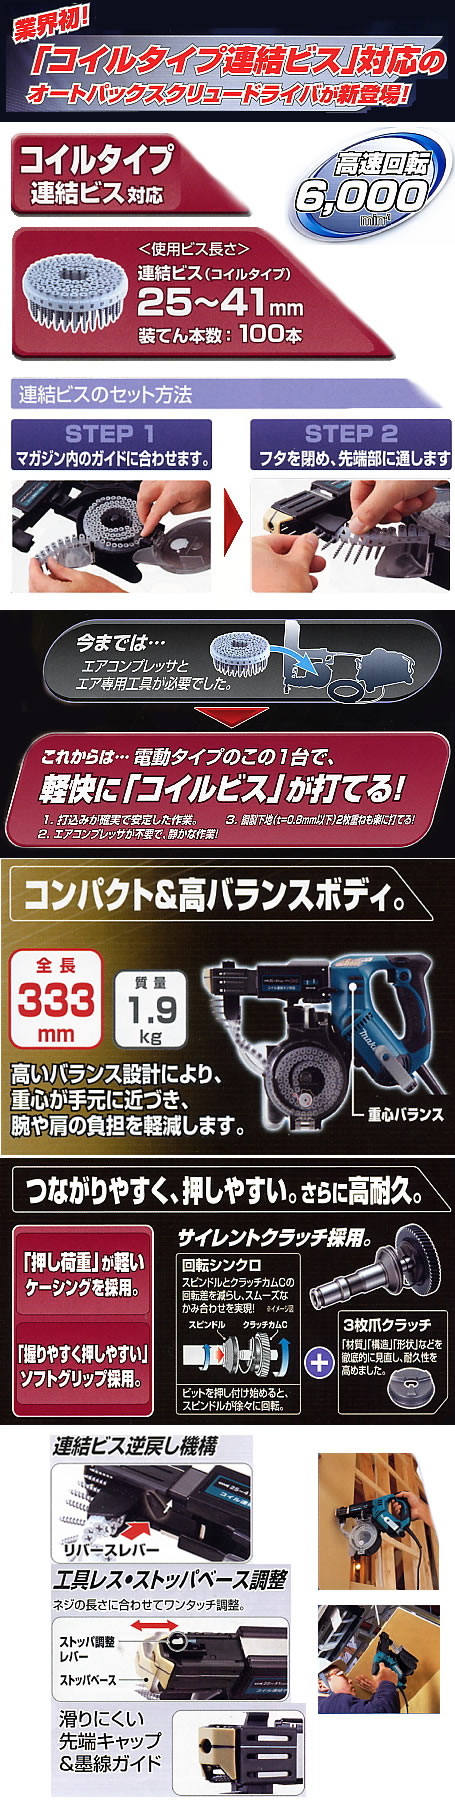 マキタ 6841R オートパックスクリュードライバ 【通販ショップe-道具市場】